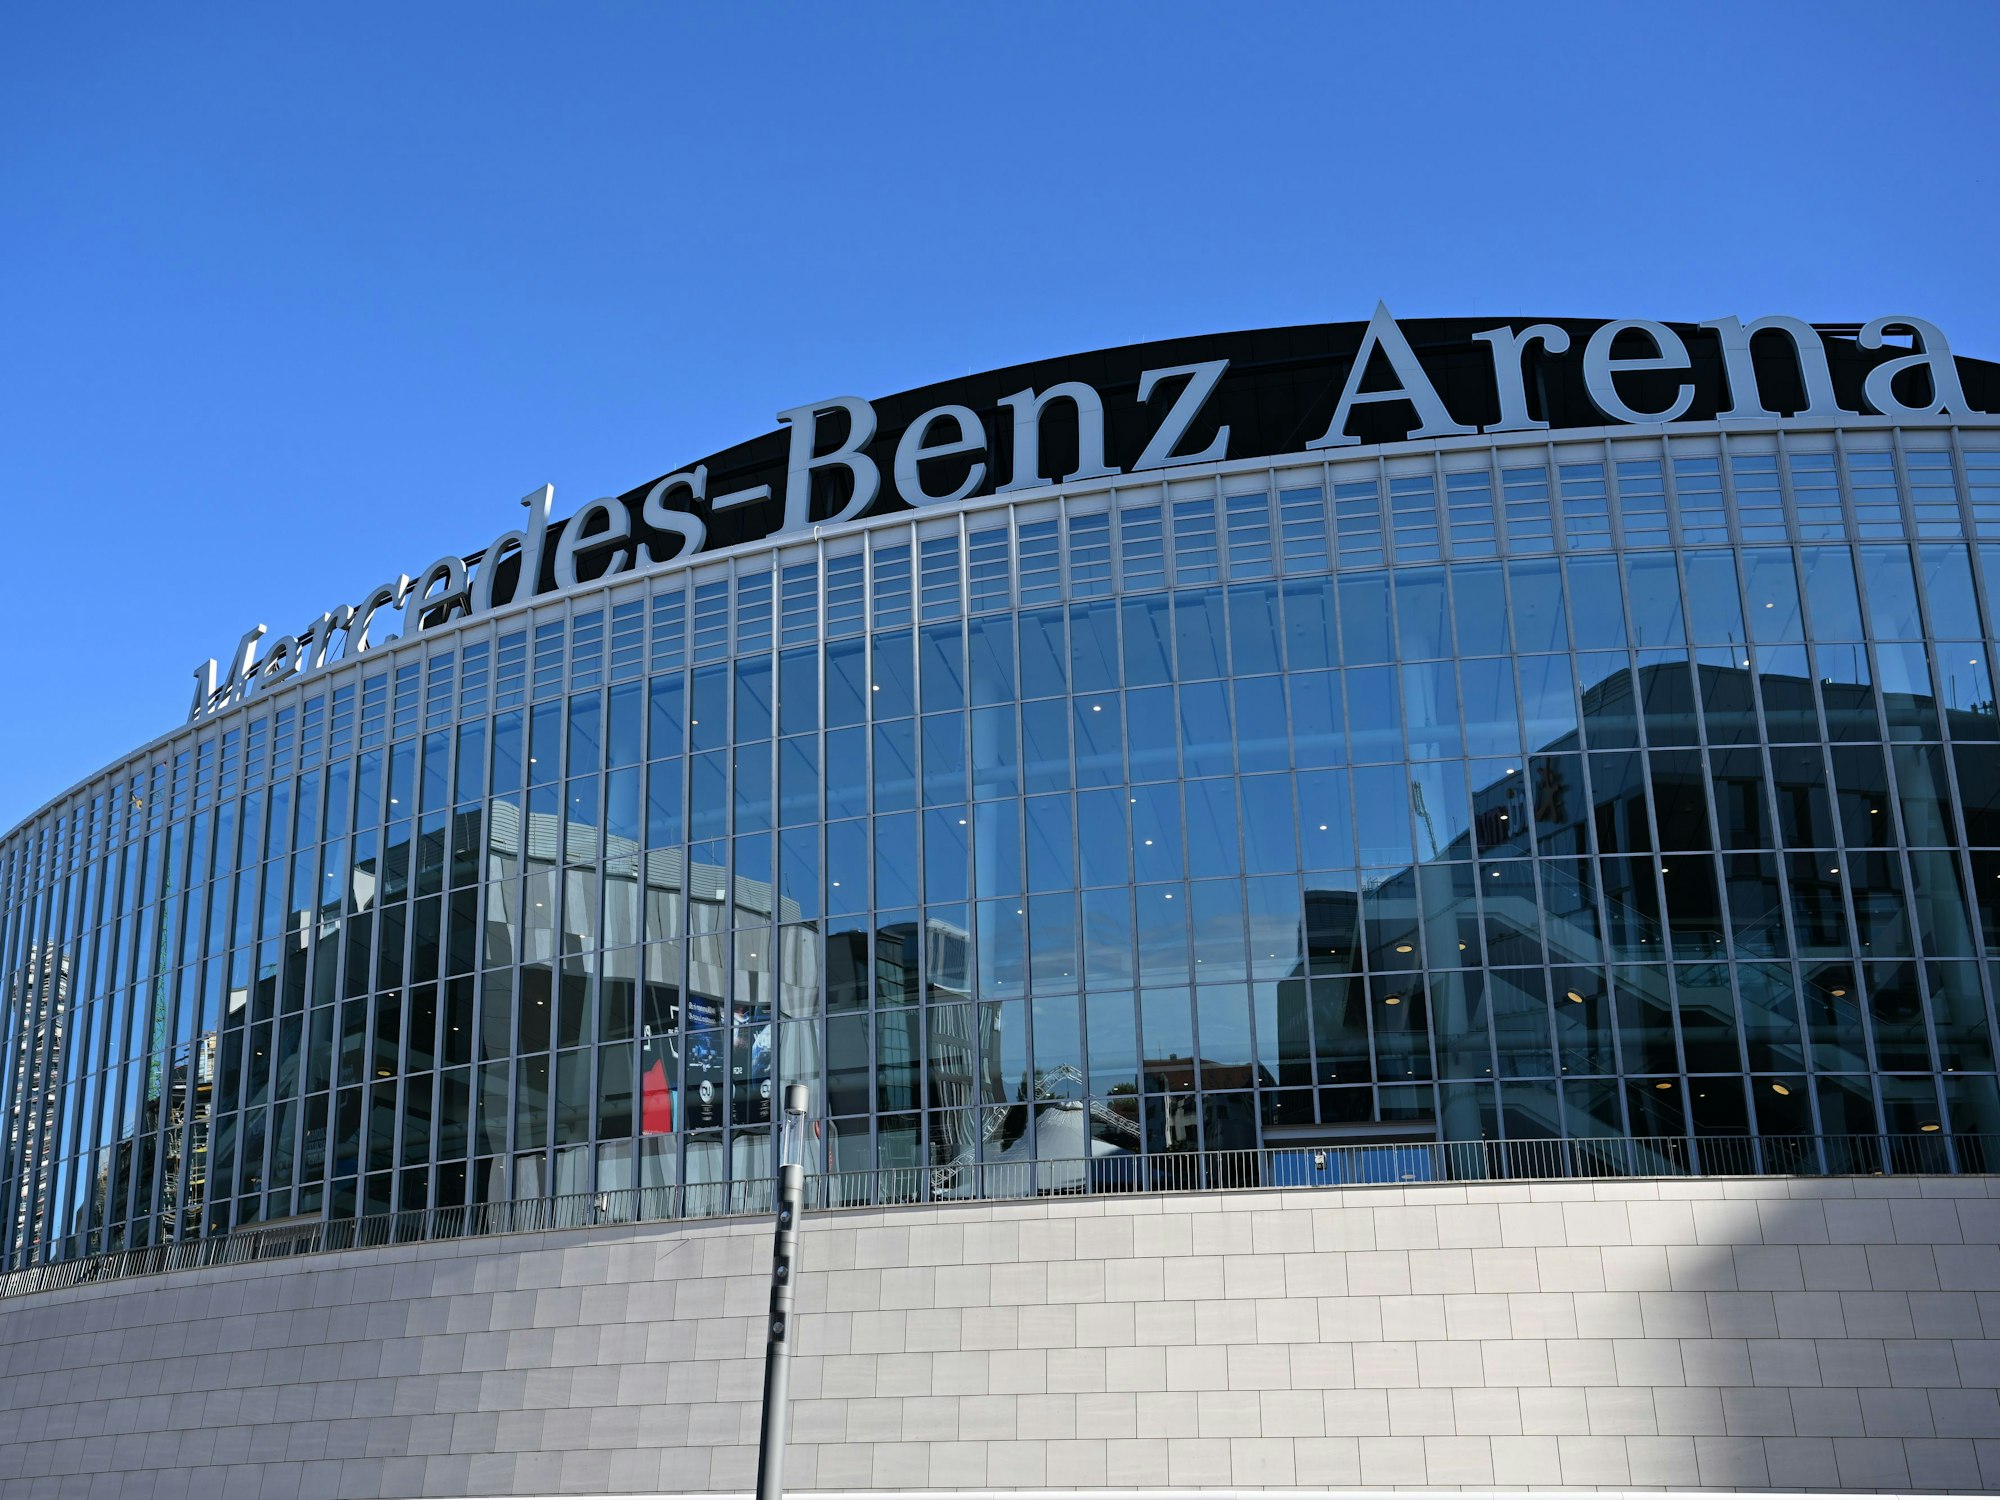 Die Mercedes-Benz Arena in Berlin von außen (2022).